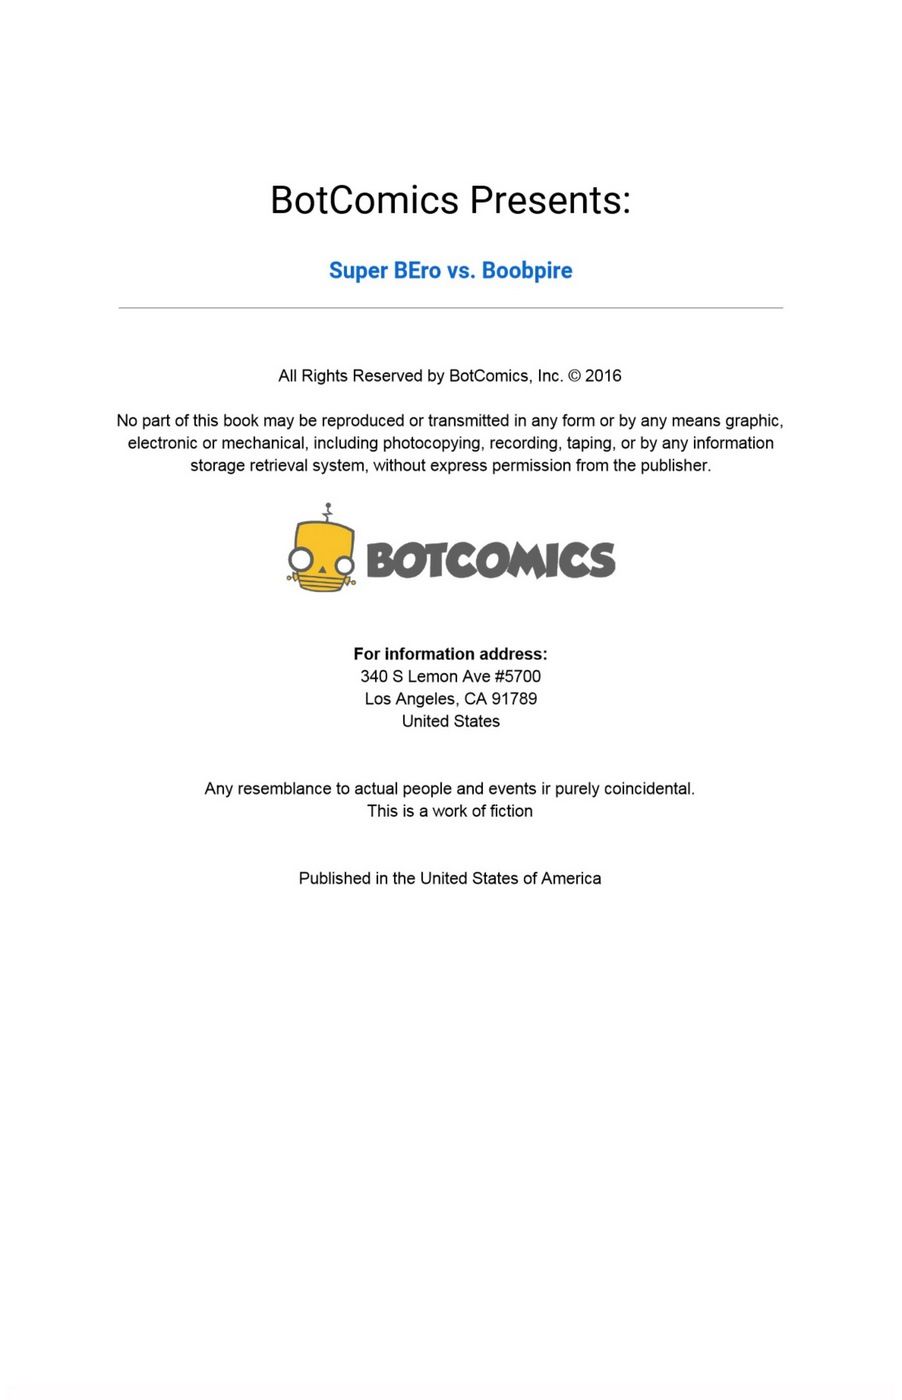 Super BEro vs. Boobpire Issue 2 - Bot page 2